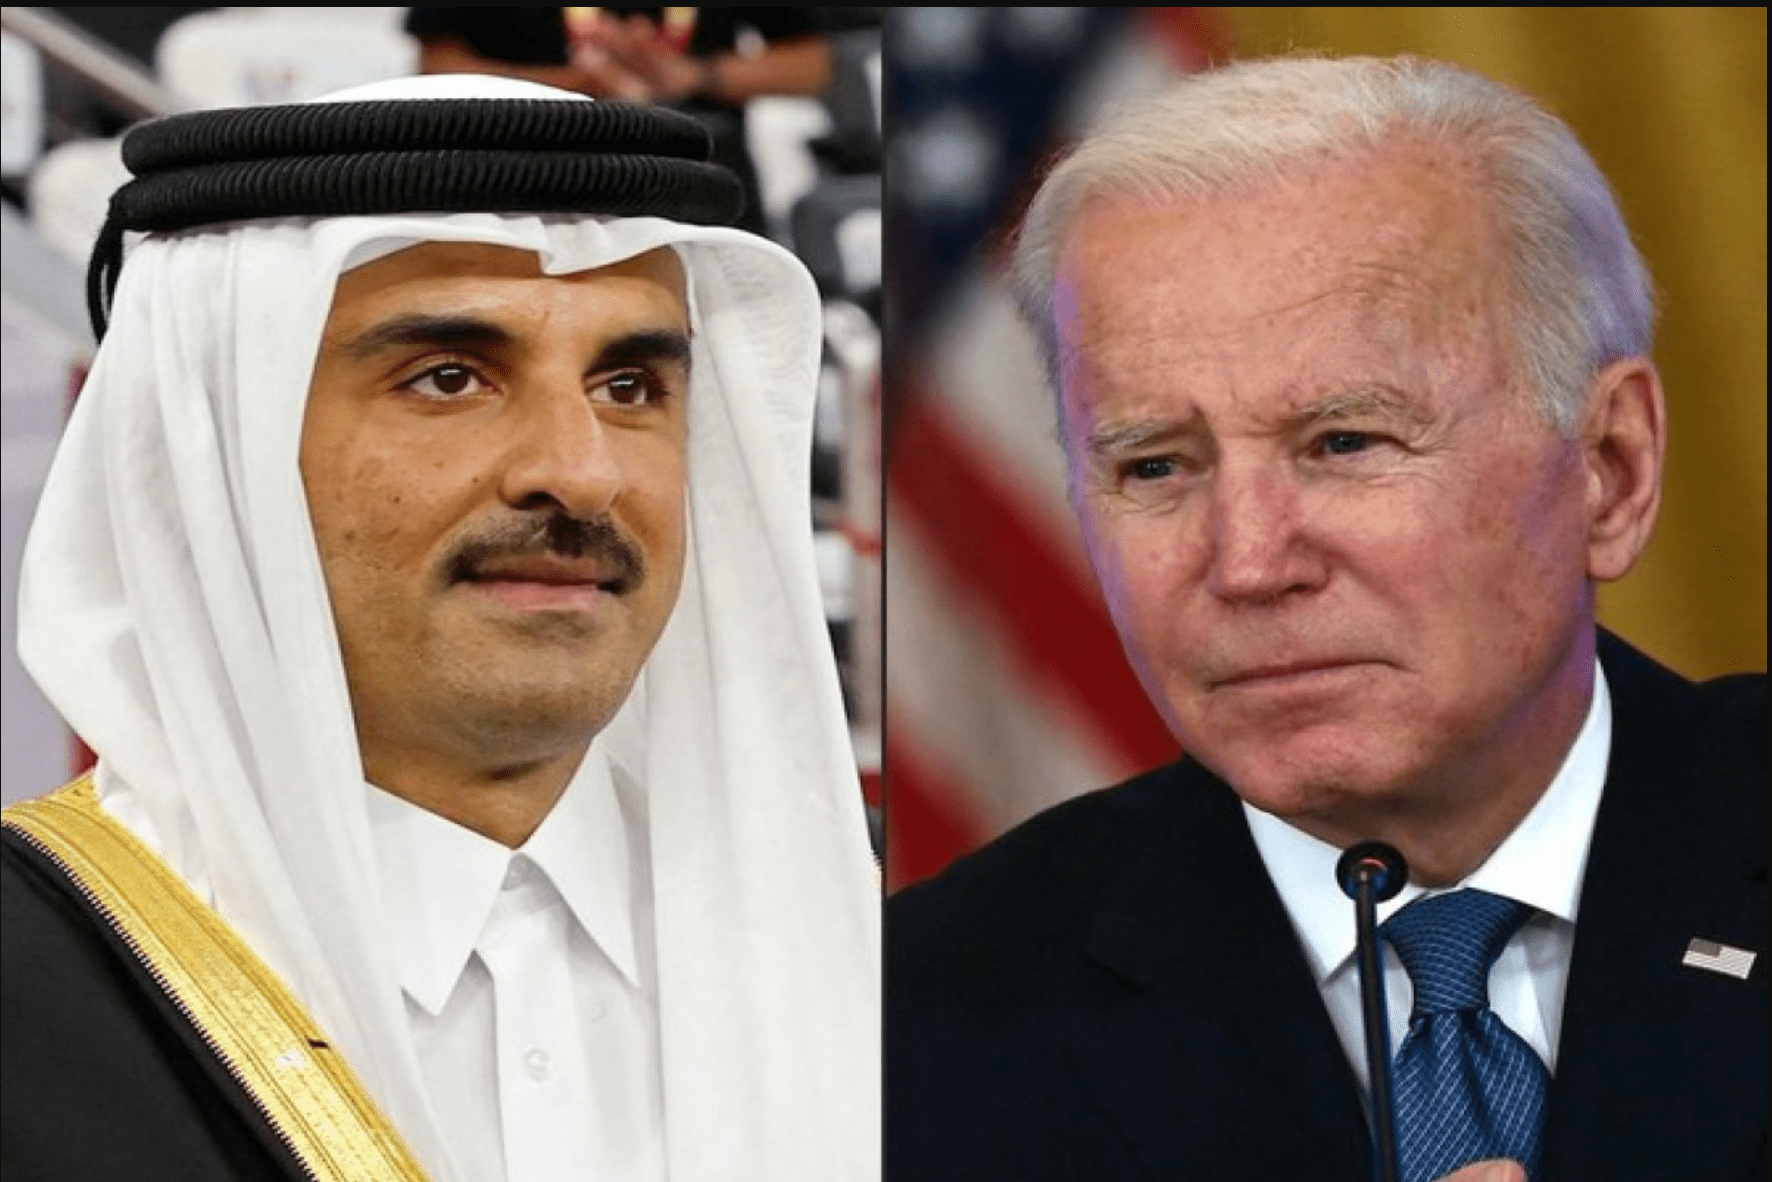 بایدن در تلاش برای حل تاخیر در تبادل گروگان ها با رهبران قطر صحبت کرد